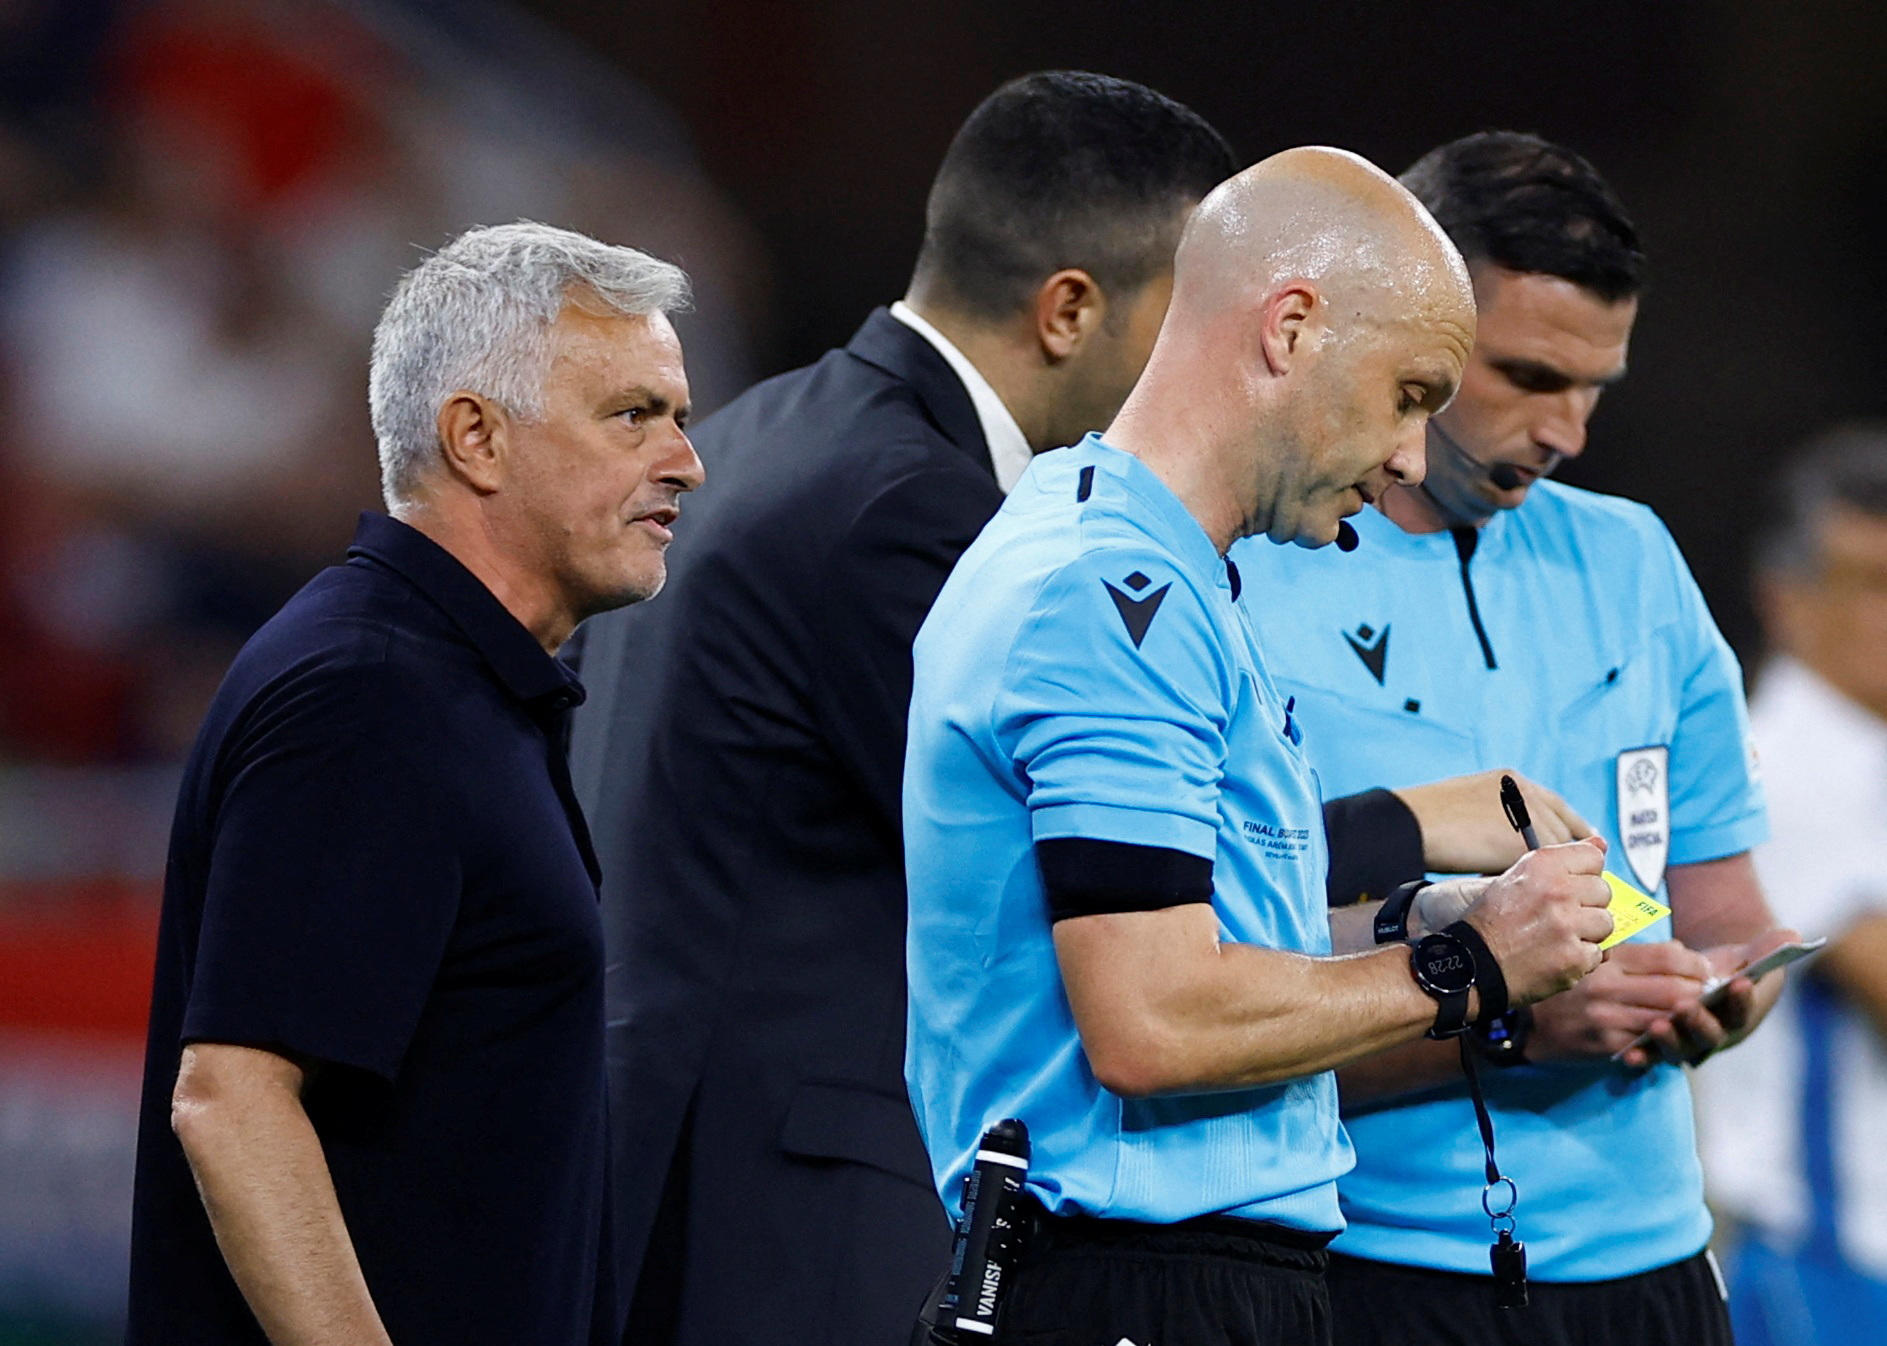 José Mourinho est sous le coup d'une enquête disciplinaire de l'UEFA (Photo REUTERS/John Sibley)